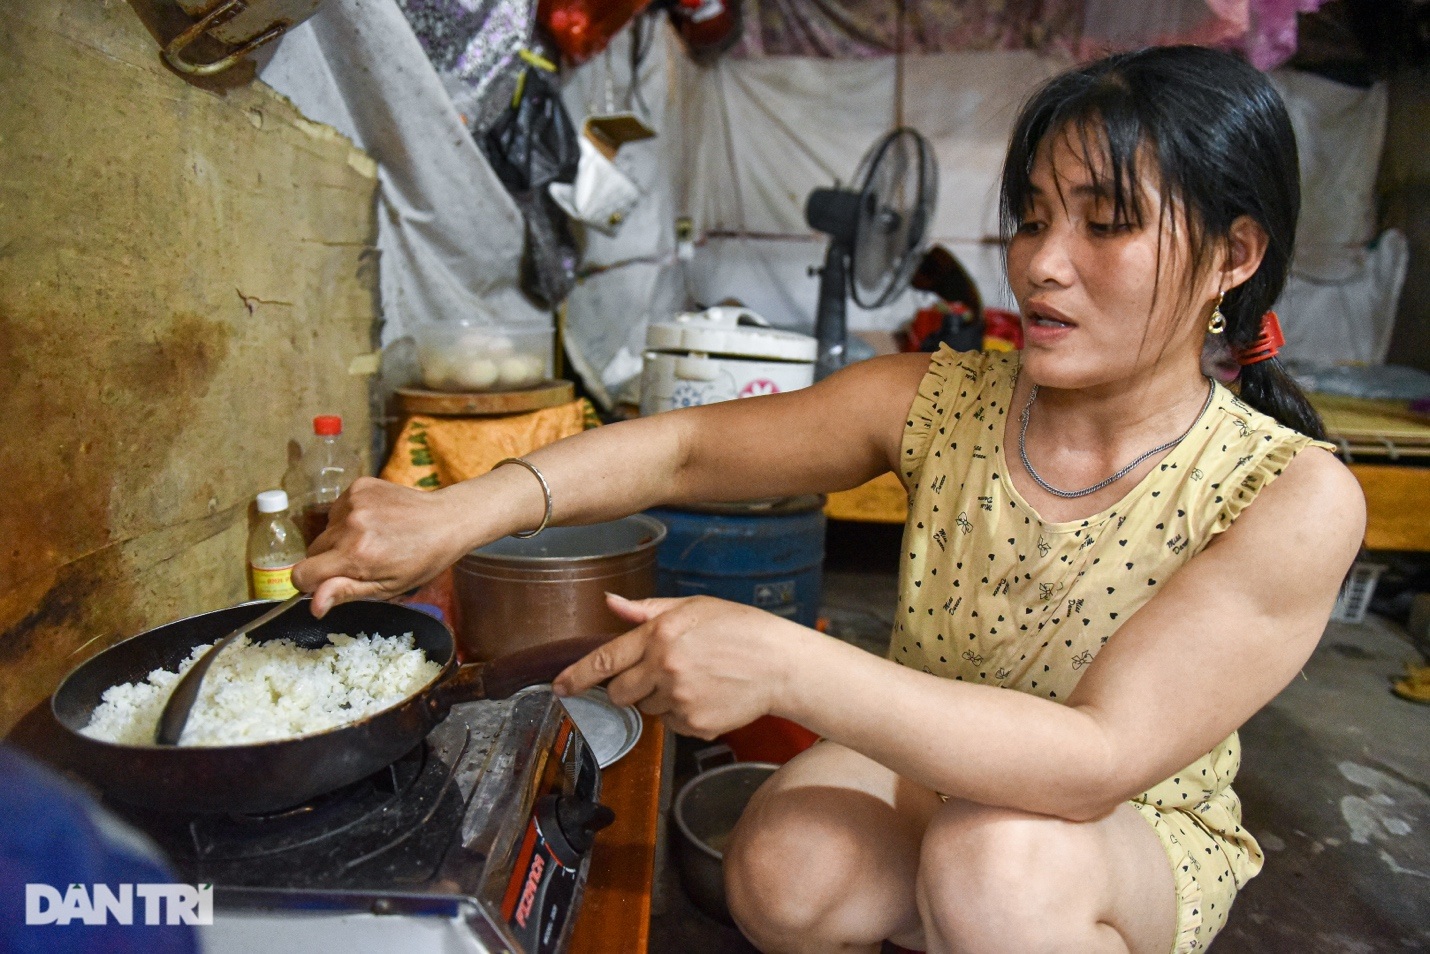 Bảng chi tiêu chỉ hơn 3 triệu đồng/tháng của vợ chồng ở Hà Nội thời bão giá - 8